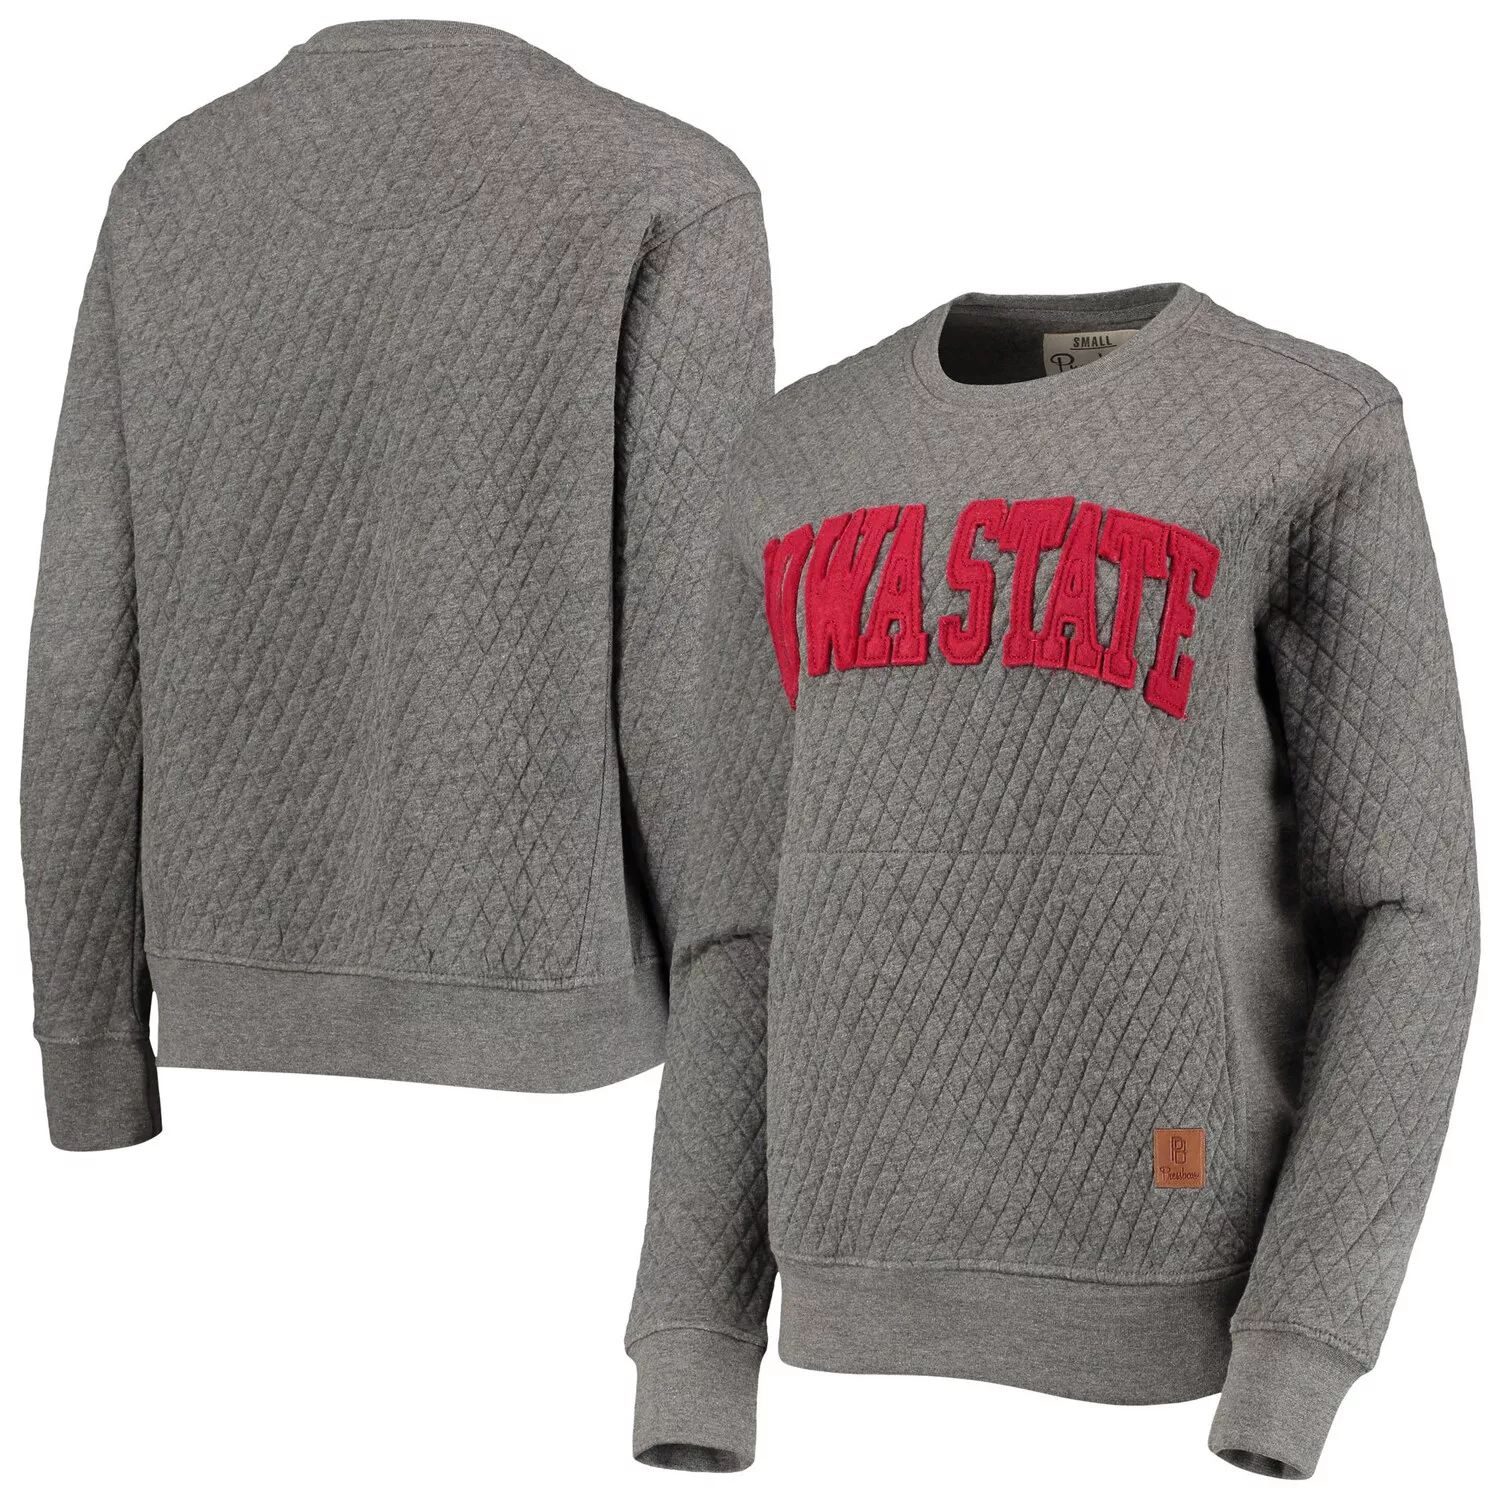 цена Женский стеганый пуловер с аппликацией из лося Pressbox, серый стеганый пуловер с надписью Iowa State Cyclones